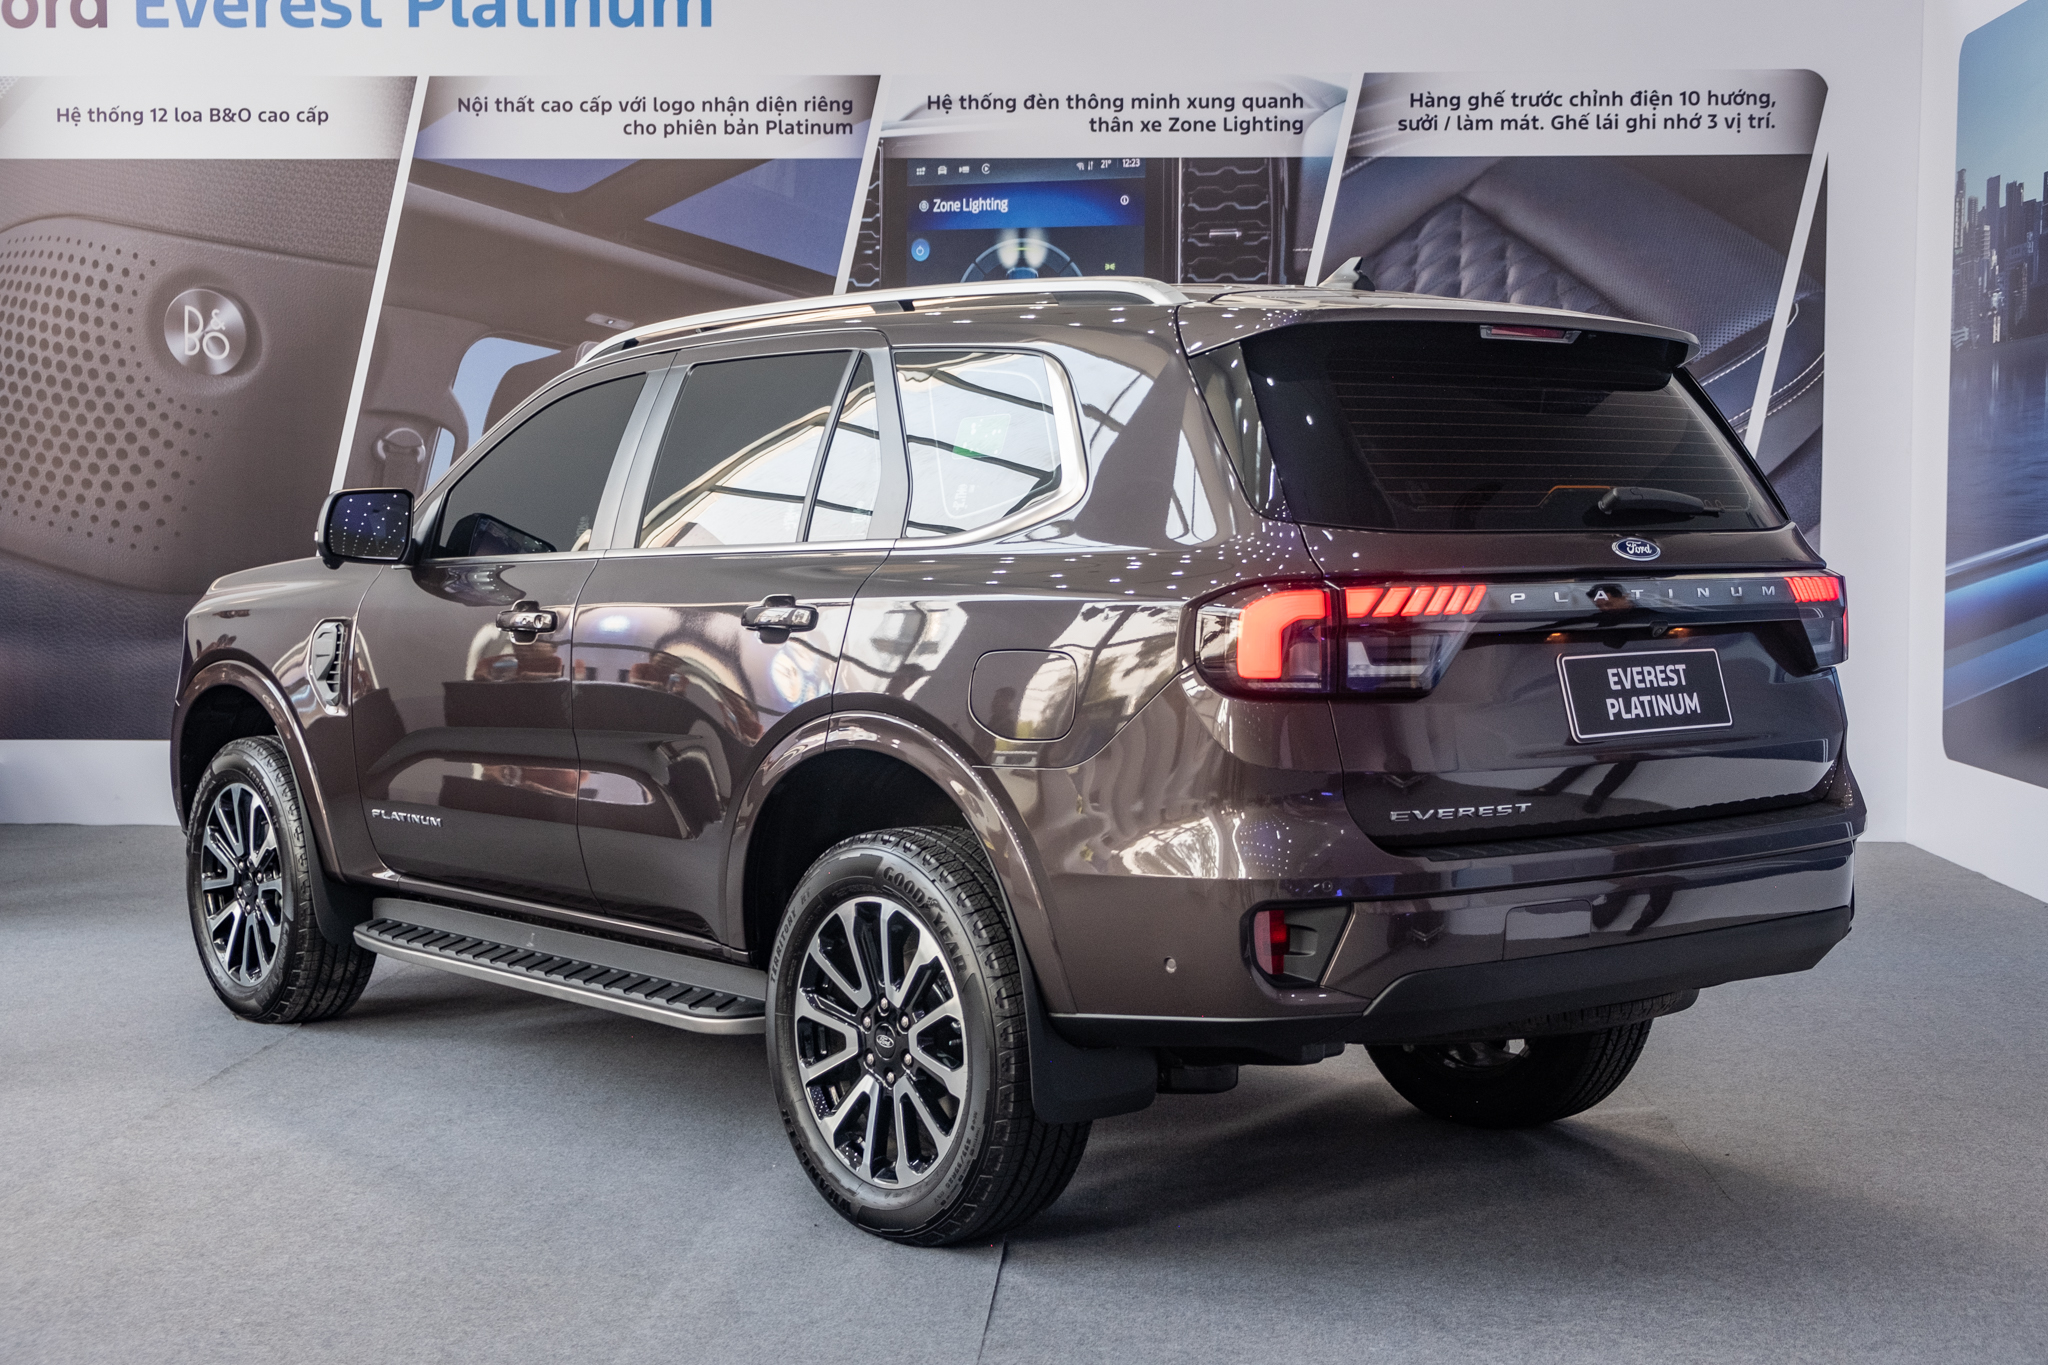 Chọn Ford Everest Titanium hay thêm 77 triệu lấy bản Platinum với nhiều tiện nghi cao cấp, bảng so sánh này sẽ giúp bạn dễ lựa chọn hơn- Ảnh 3.